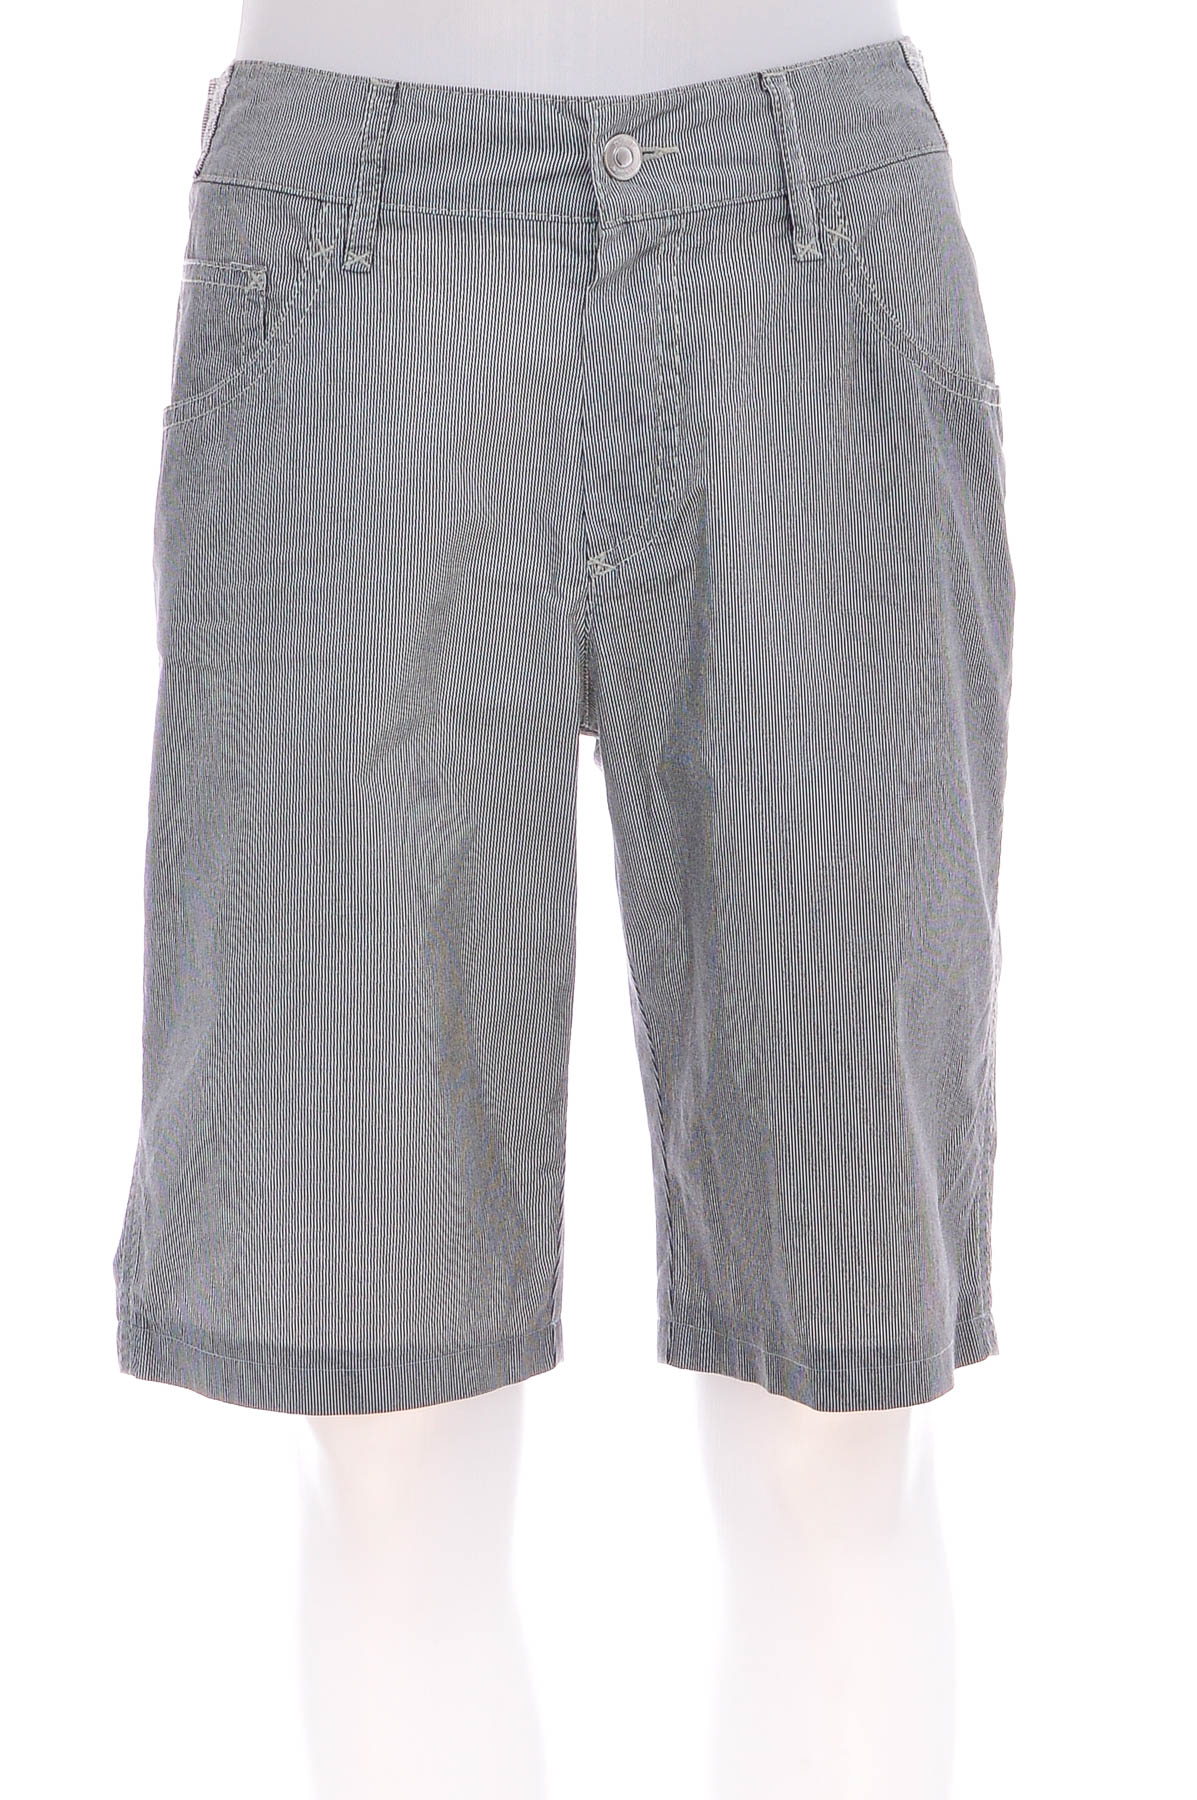 Female shorts - Rosner - 0